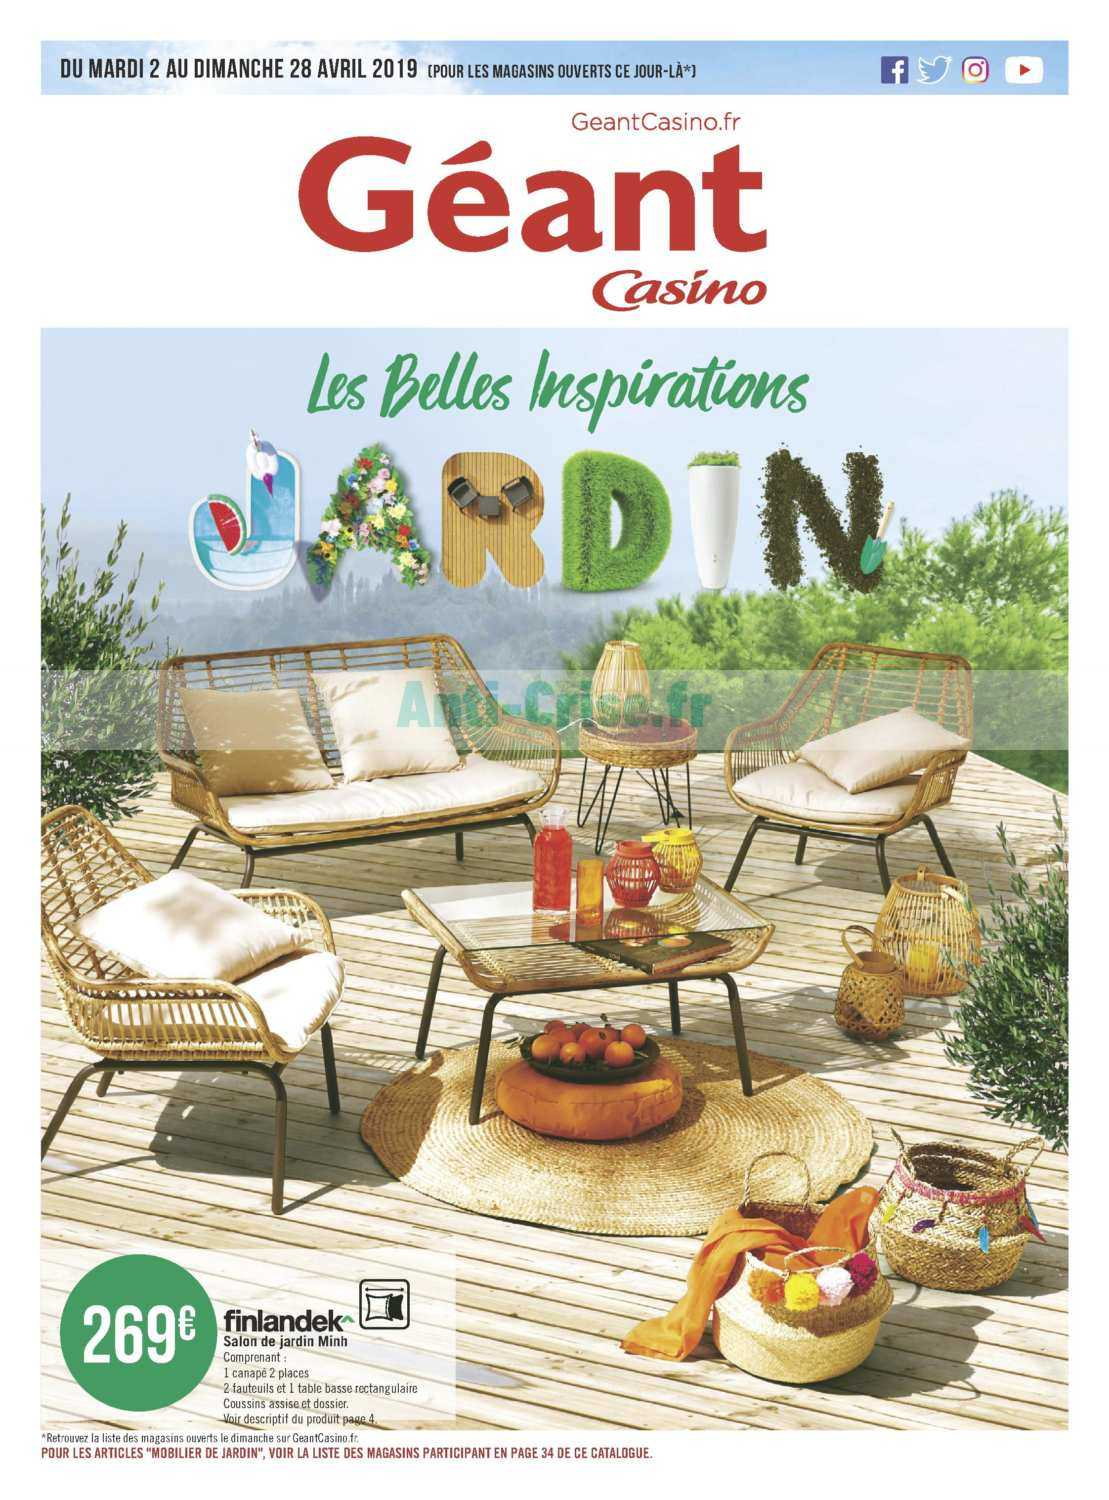 Salon De Jardin Geant Casino 2019 - The Best Undercut Ponytail destiné Salon De Jardin Casino